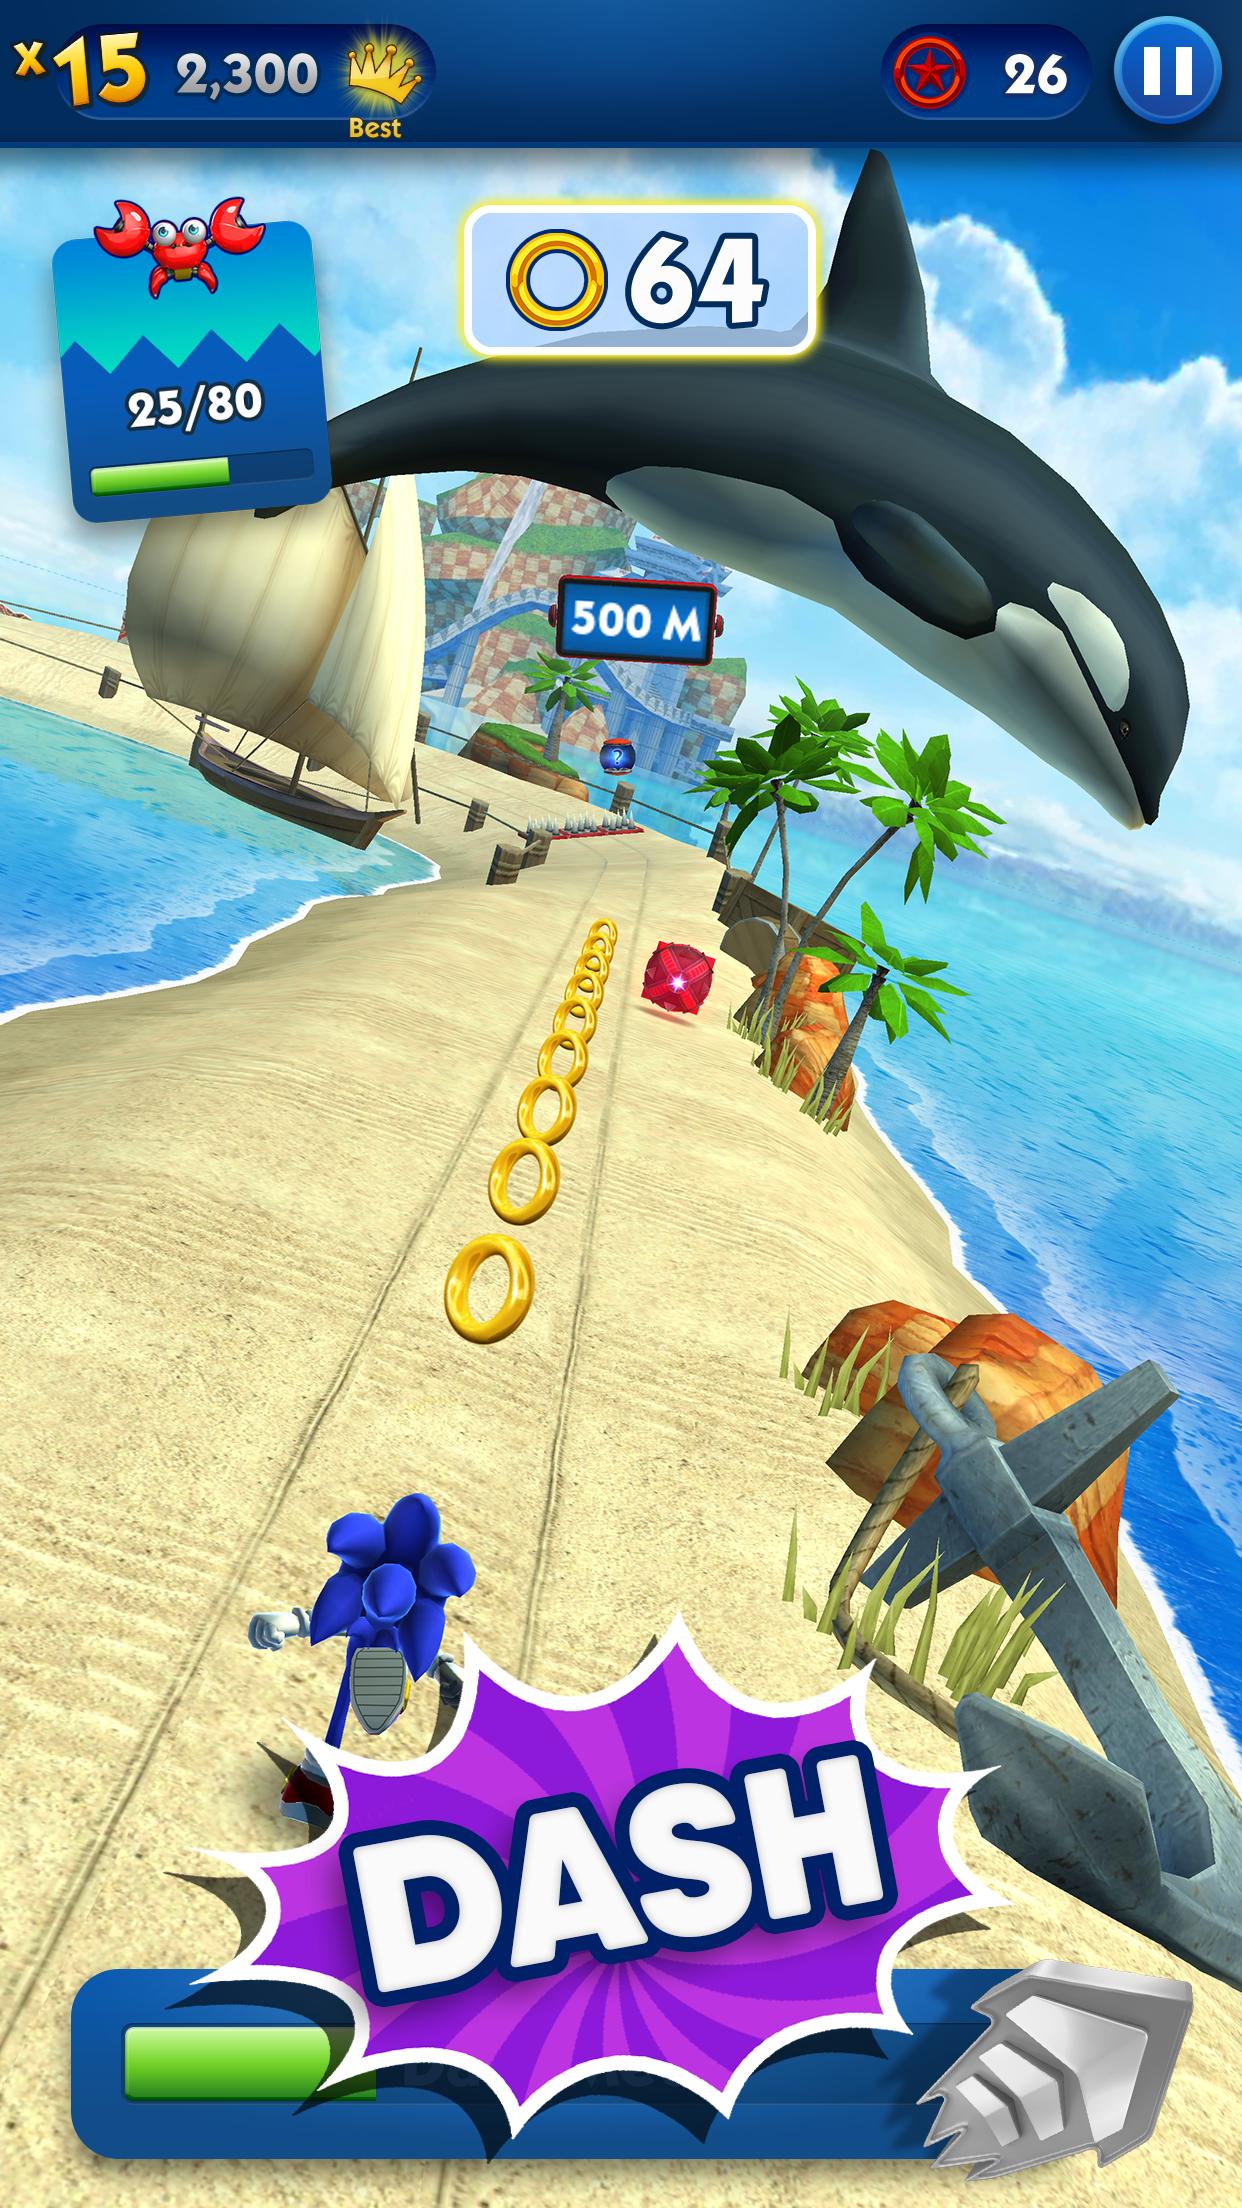 Sonic Dash - Endless Running & Racing Game 4.14.0 Screenshot 18